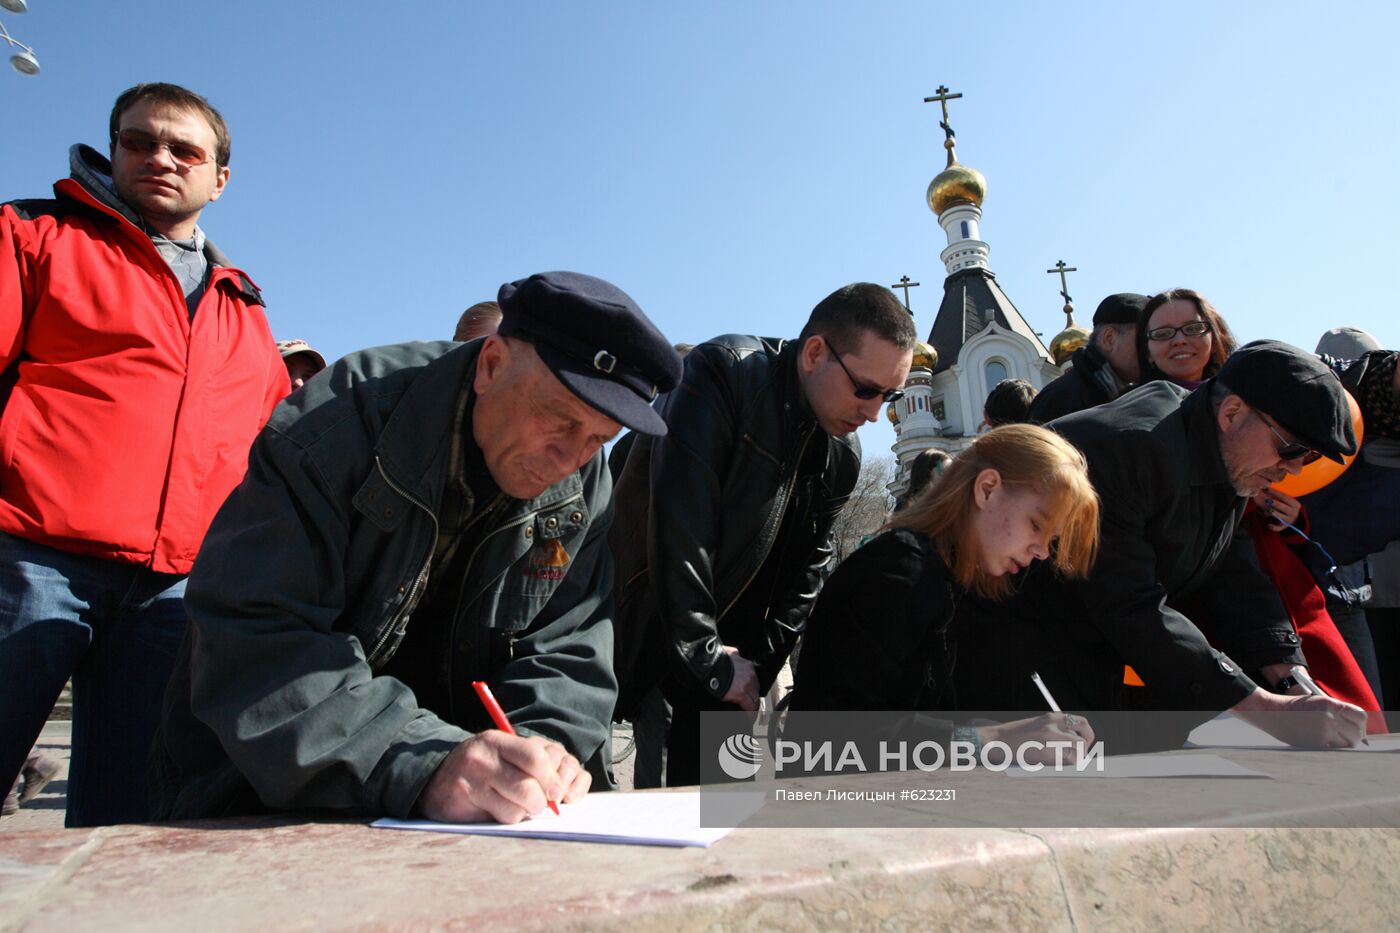 Митинг против строительства храма в центре Екатеринбурга